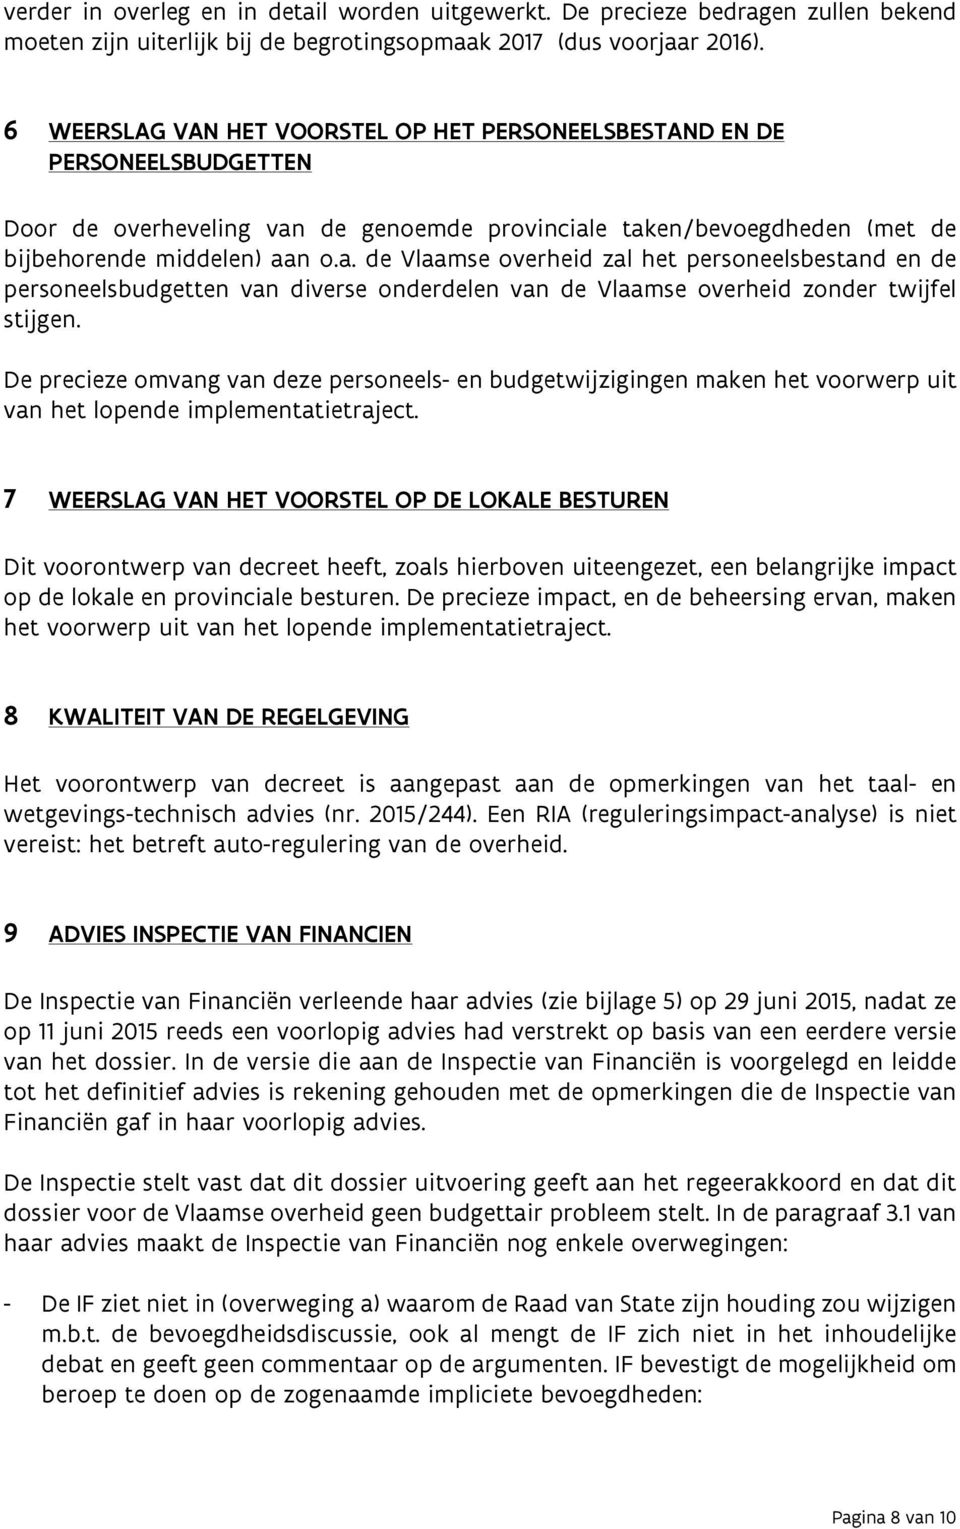 de genoemde provinciale taken/bevoegdheden (met de bijbehorende middelen) aan o.a. de Vlaamse overheid zal het personeelsbestand en de personeelsbudgetten van diverse onderdelen van de Vlaamse overheid zonder twijfel stijgen.